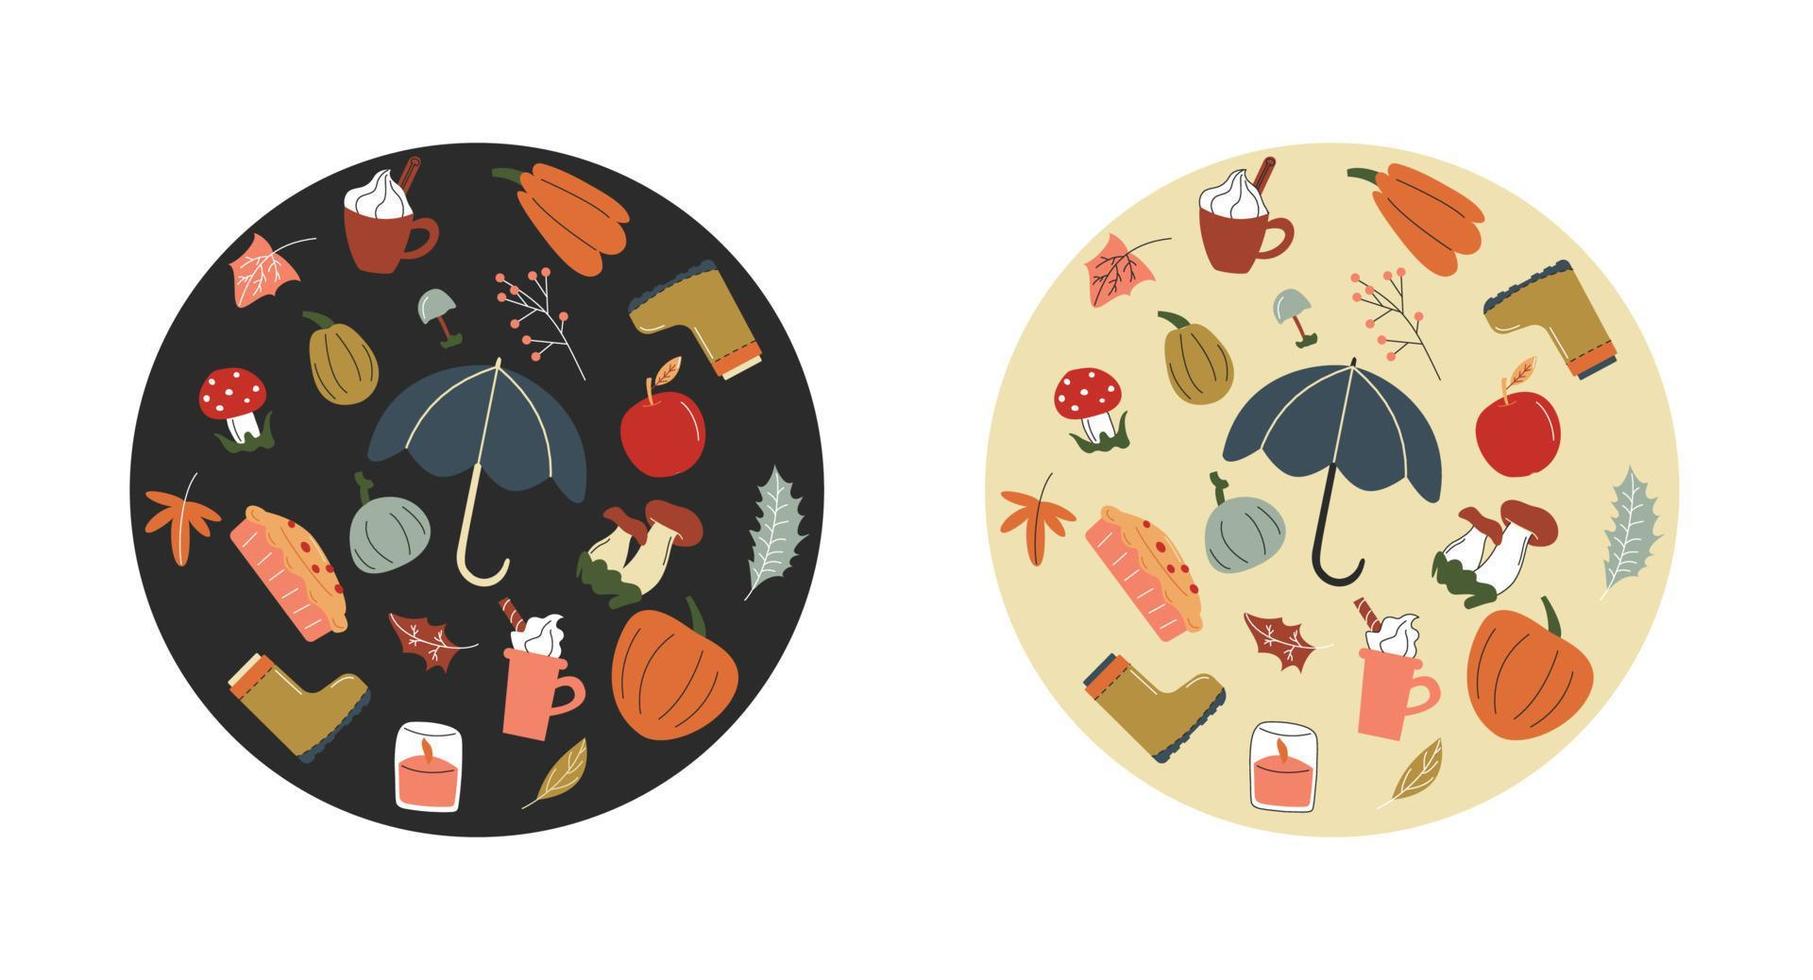 une forme de cercle rond avec une collection d'éléments d'automne dessinés à la main sur un fond clair et sombre. illustration de stock de vecteur. parapluie, latte, citrouille, feuilles, pomme, tarte, bougie, champignon. vecteur